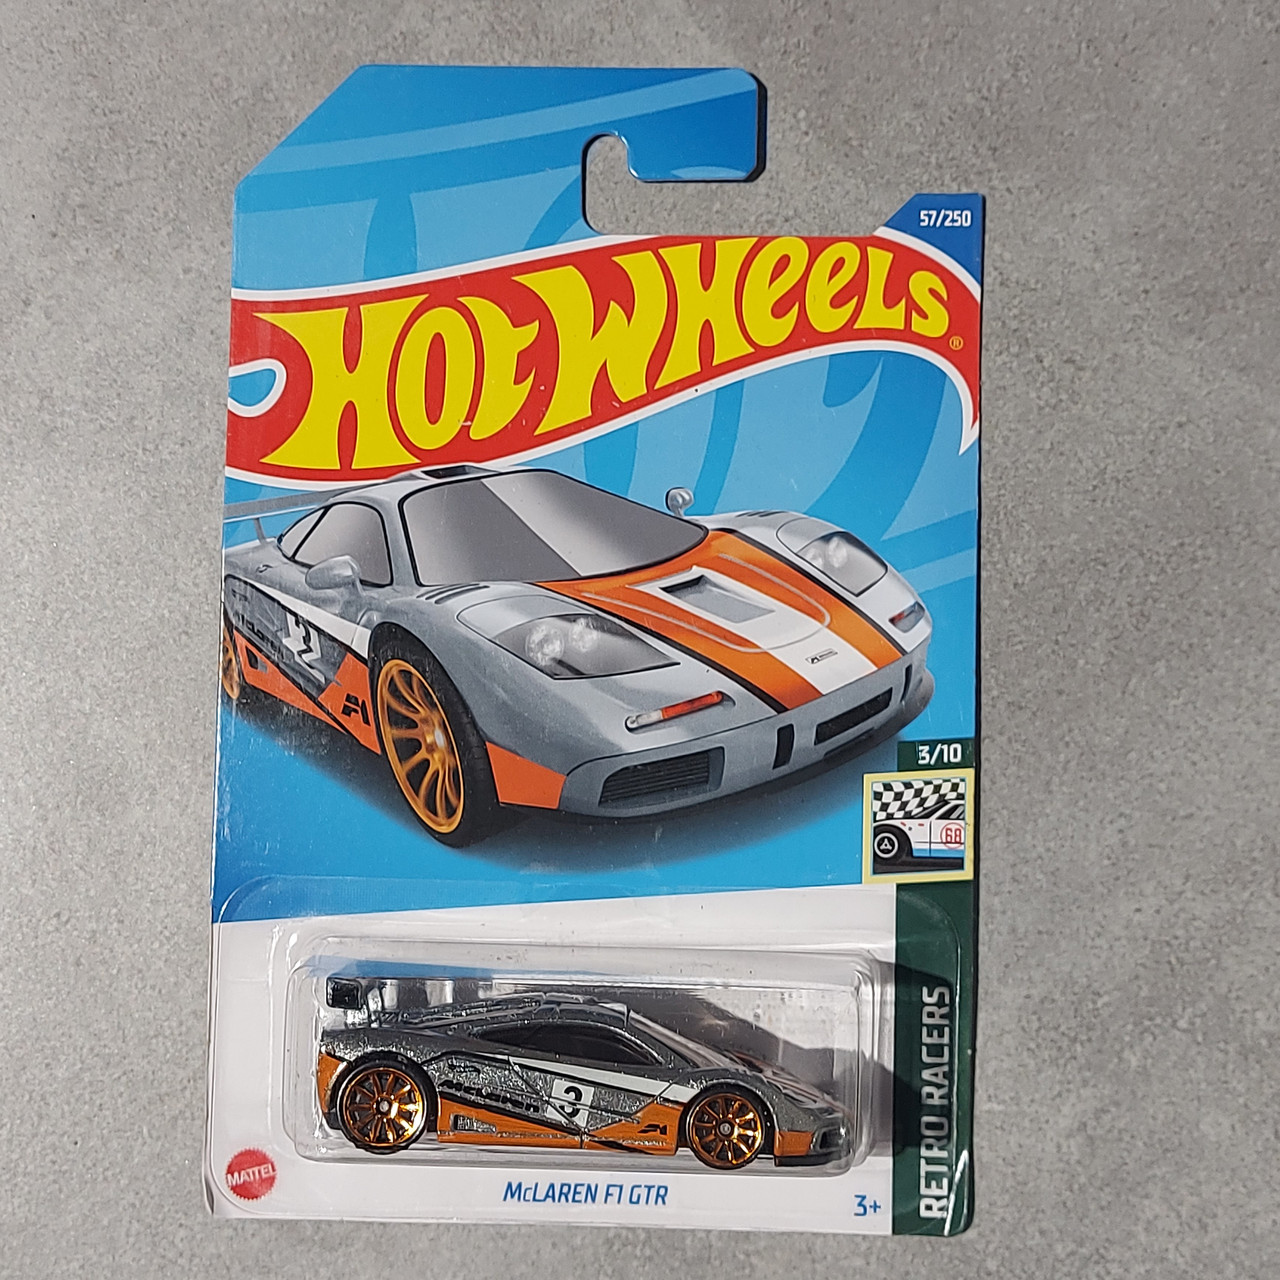 Оригинальная Машинка "Hot wheels" McLAREN F1 GTR. Retro Racers. Mattel. 57/250. Хотвилс. Машинки. Подарок.